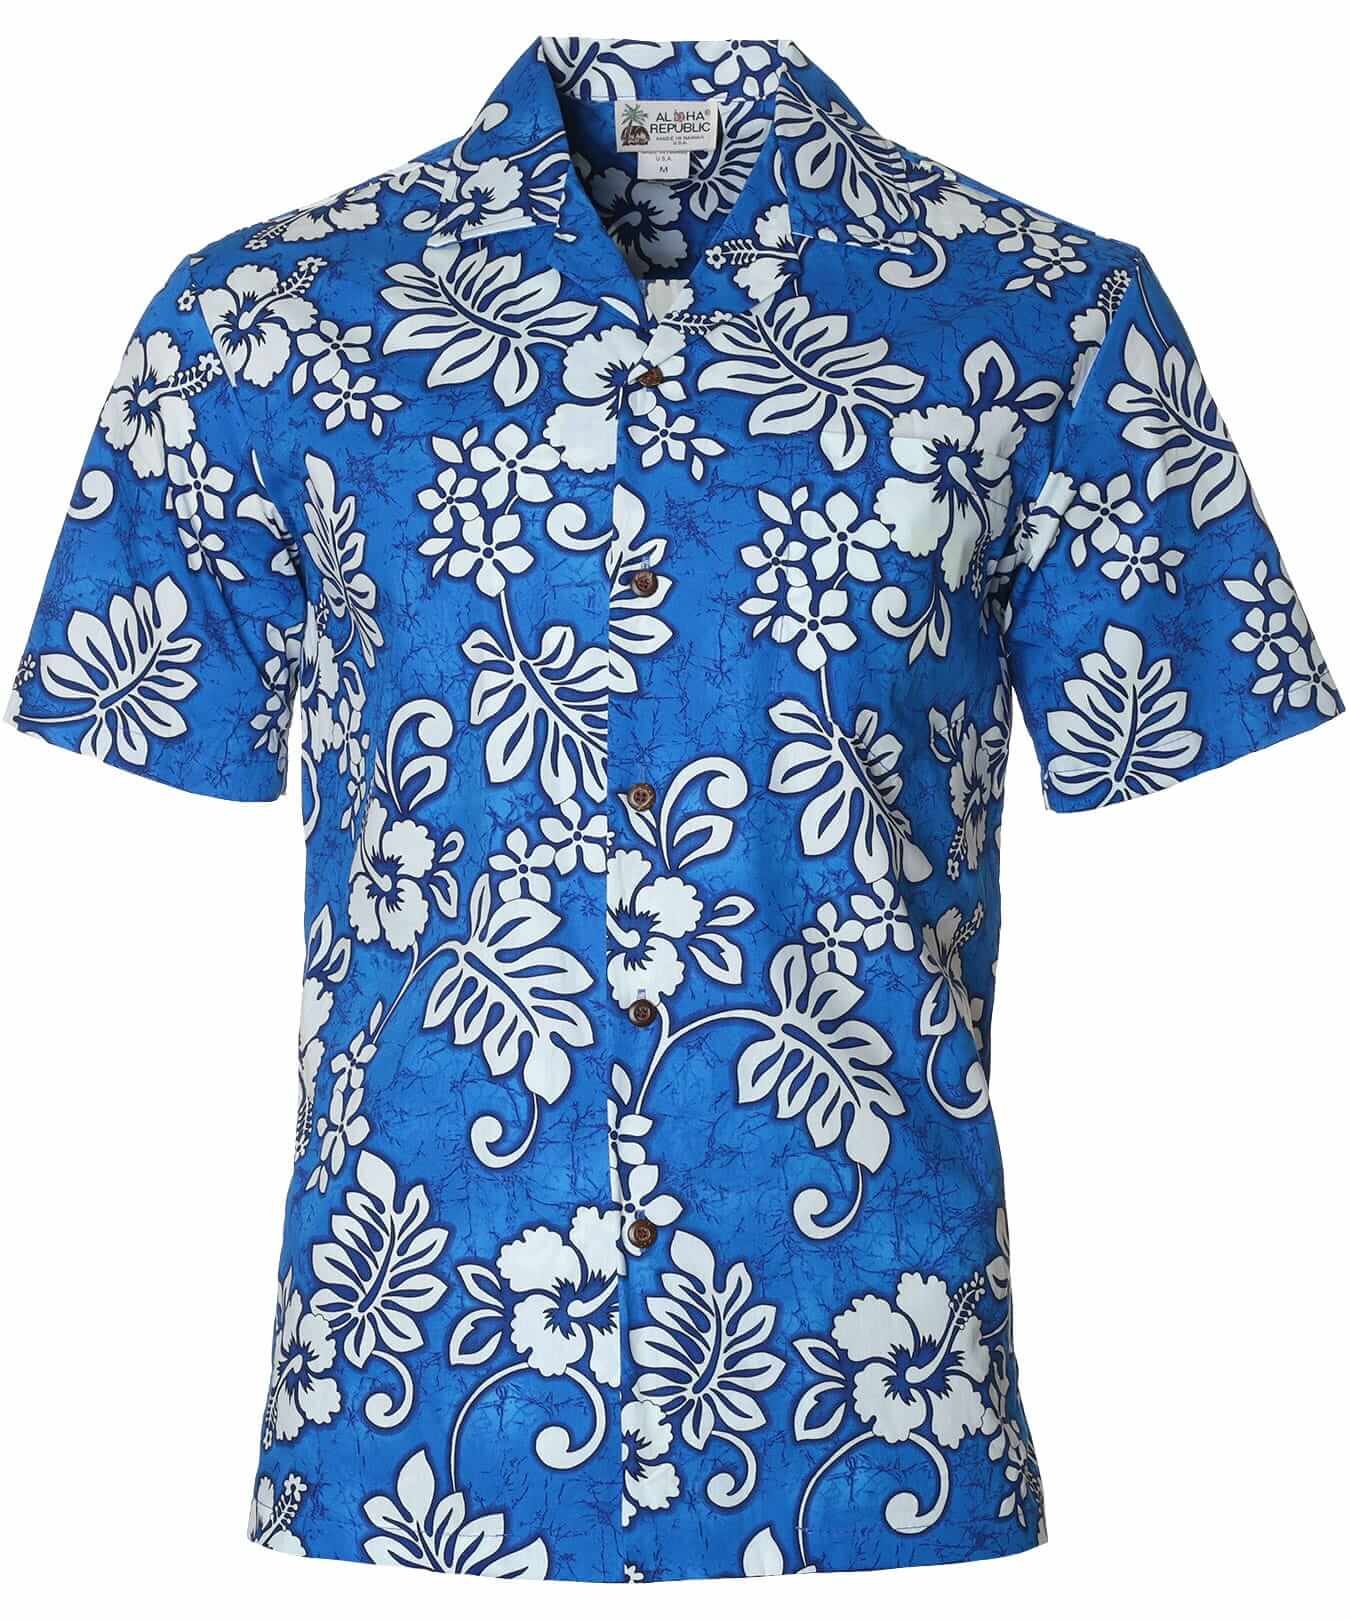 Island Tropical Cotton Aloha Shirt Blue